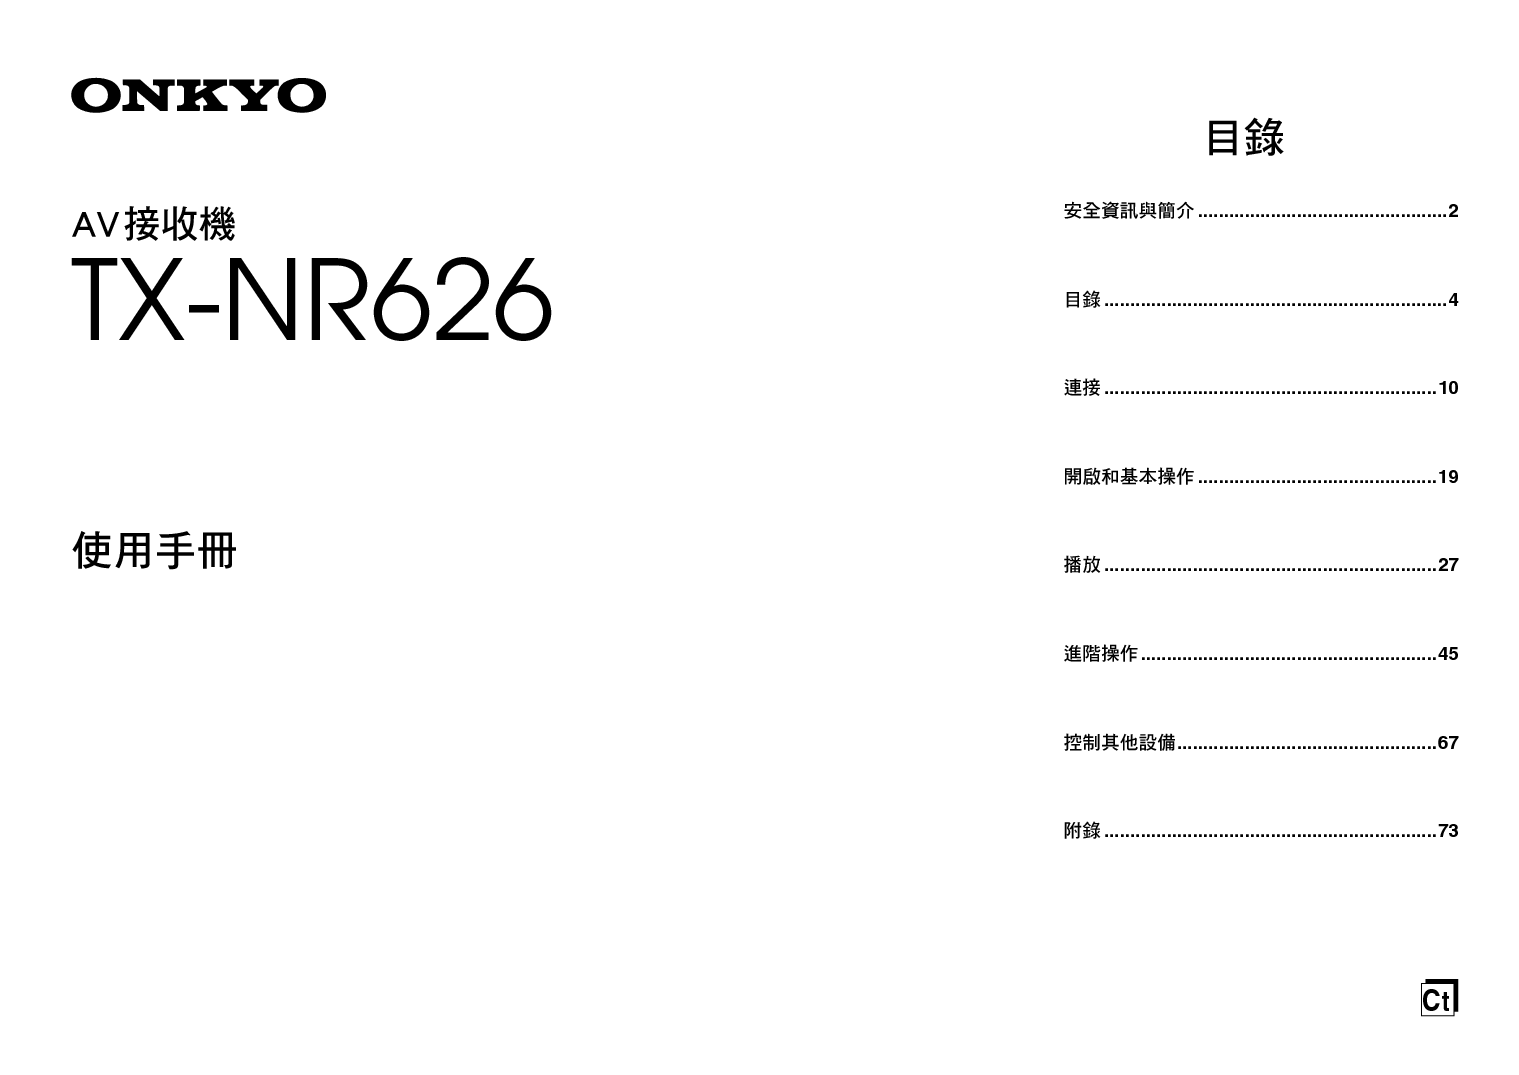 安桥 Onkyo TX-NR626 繁体 使用手册 封面